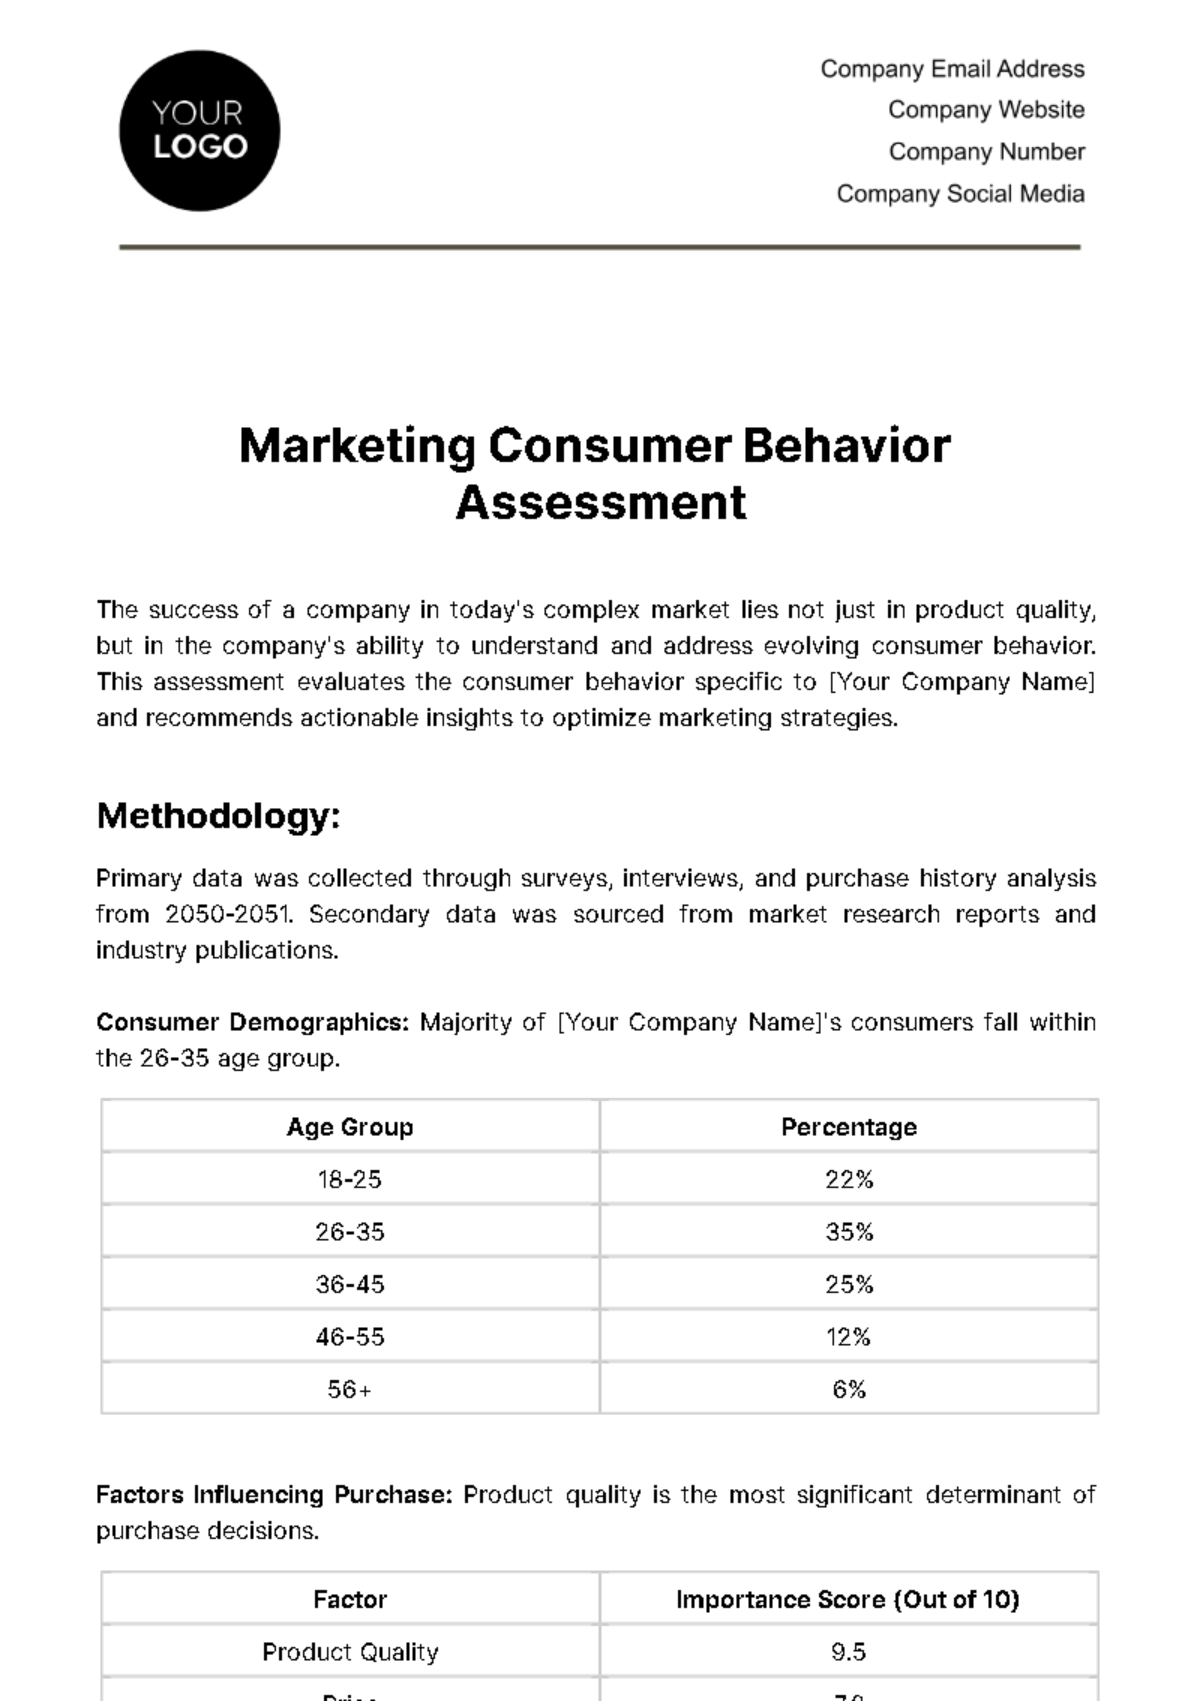 Free Marketing Consumer Behavior Assessment Template